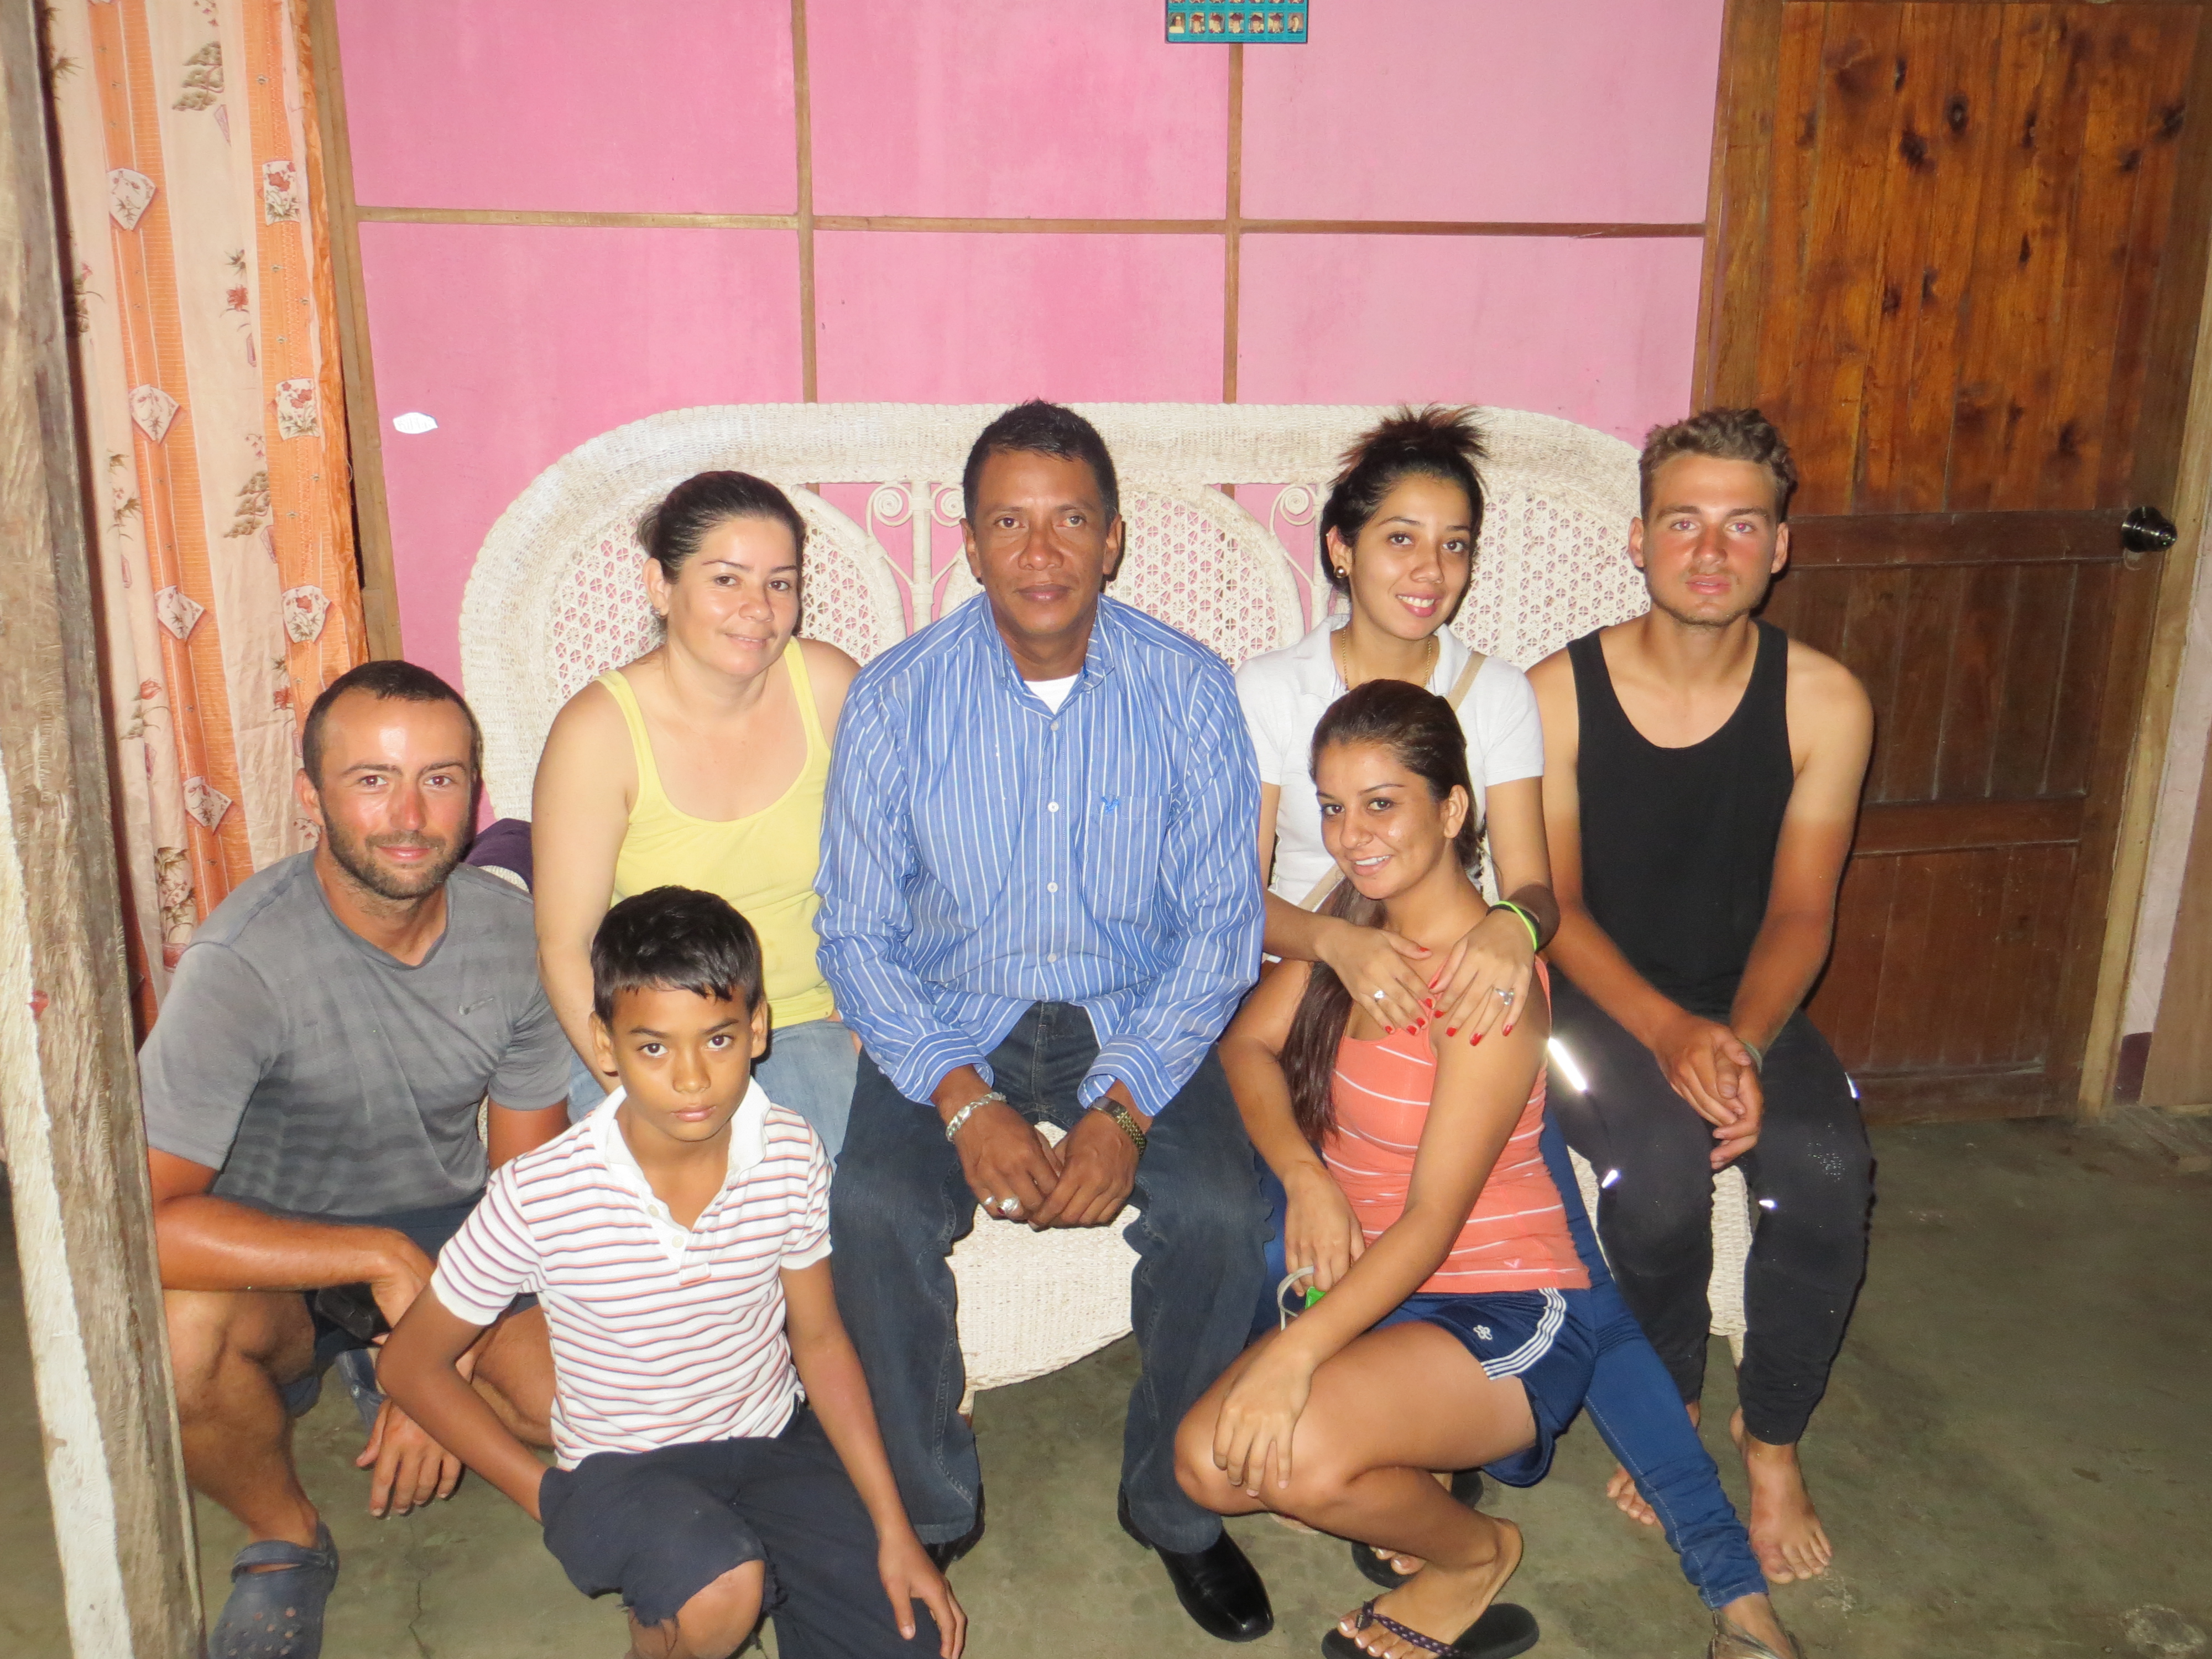 La famille Babino nous accueille au pied levée à San Carlos, Nicaragua. Un grand merci pour leur hospitalité !